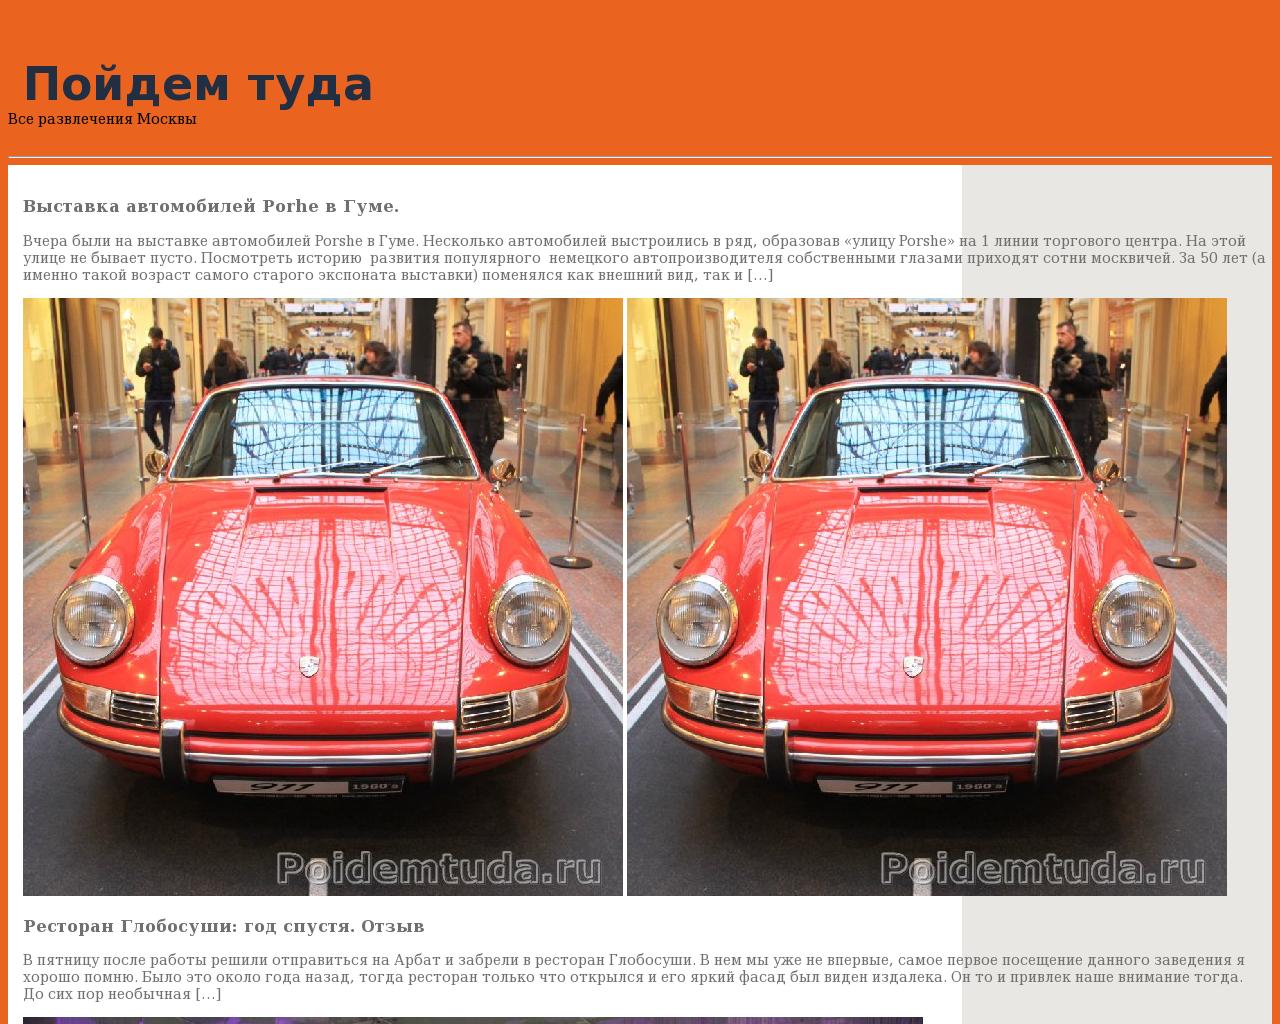 Изображение сайта poidemtuda.ru в разрешении 1280x1024